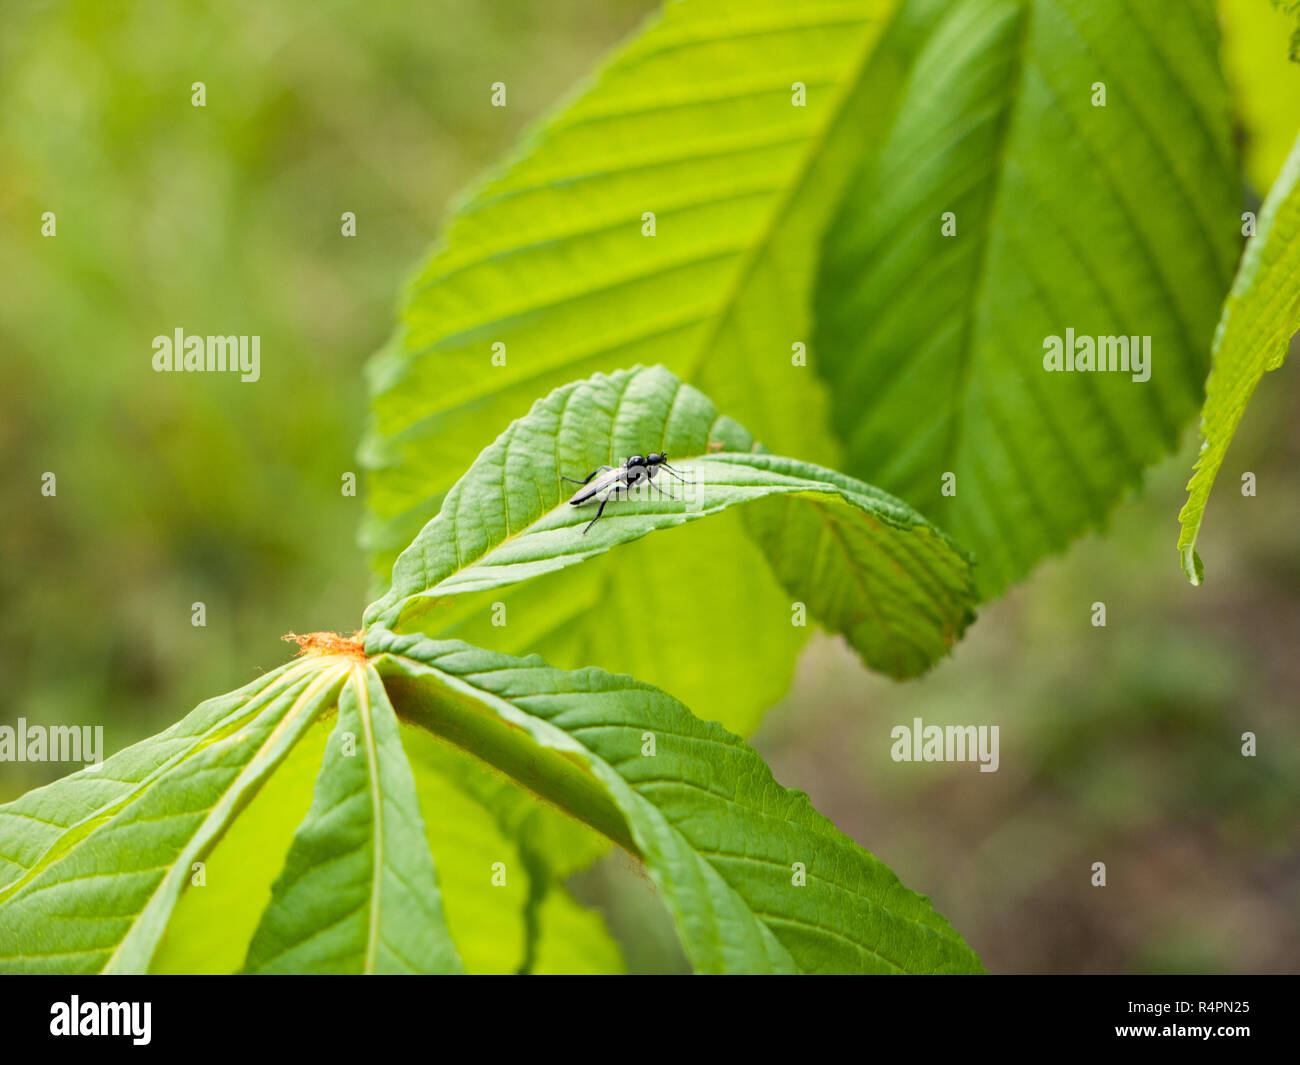 Eine kleine schwarze Fliegen auf eine Pflanze Blätter im Frühling Licht  ruht Stockfotografie - Alamy